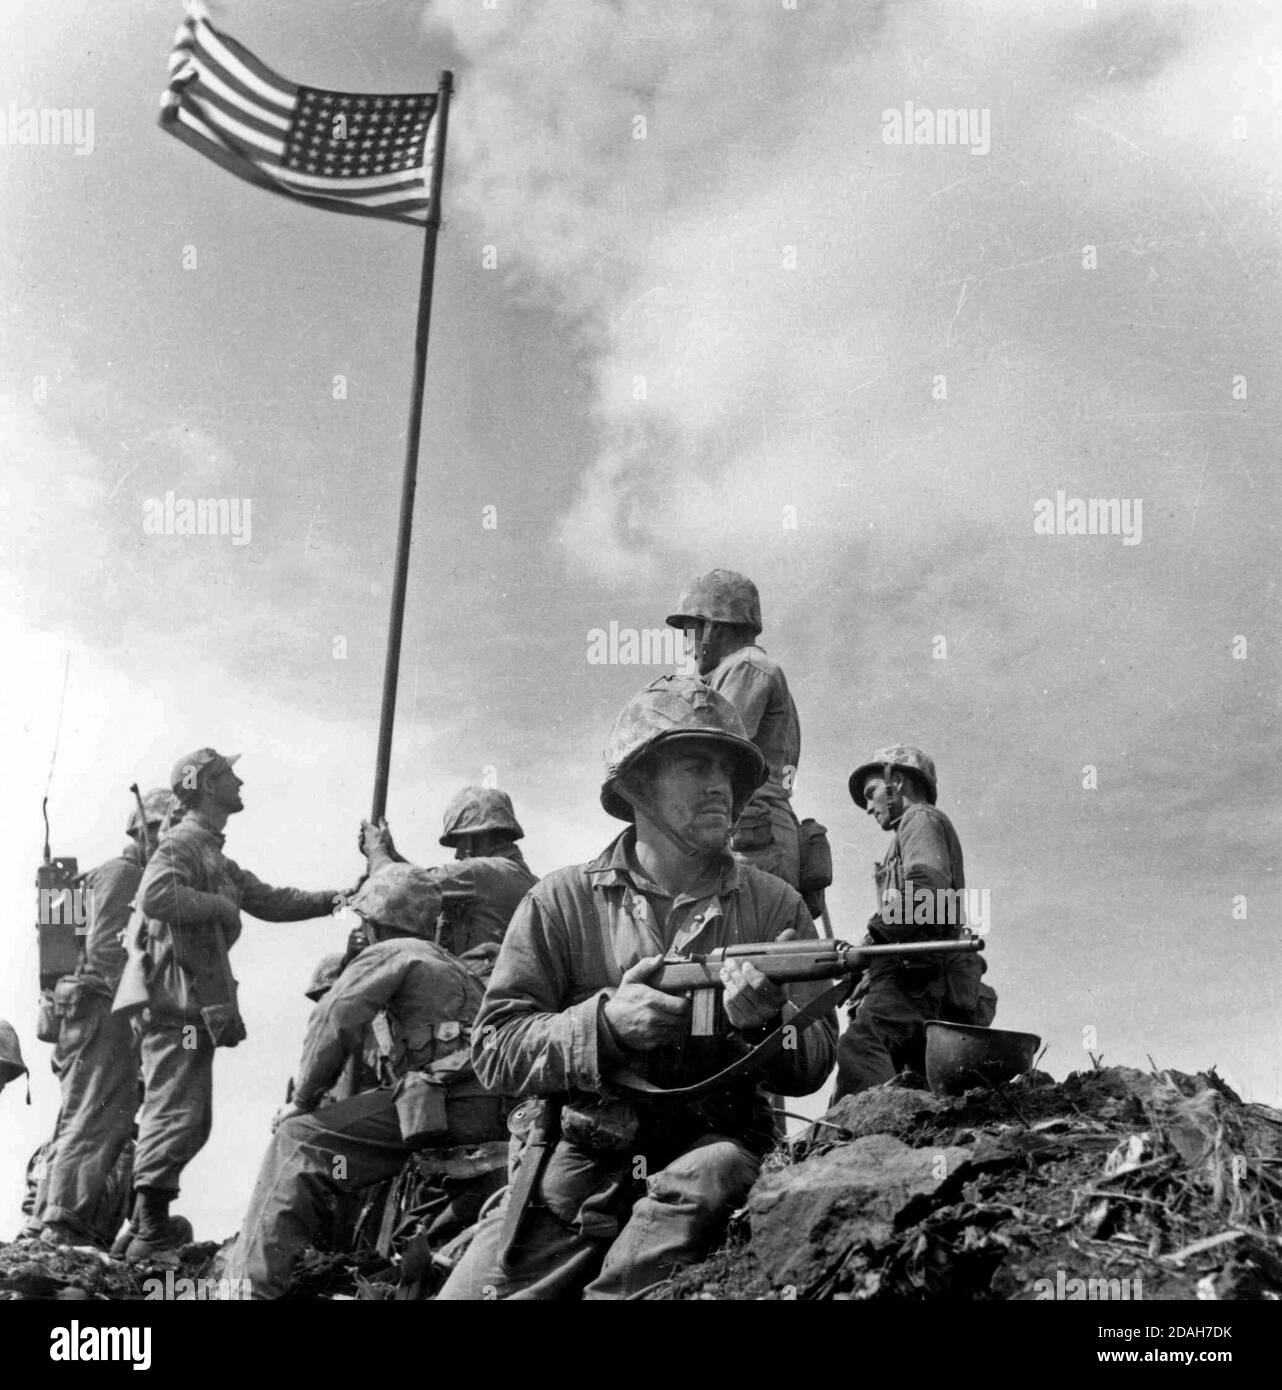 Eine kleine Flagge, die vom 2. Bataillon, 28. Marines getragen wird, wird auf dem Berg Suribachi um 10:20 Uhr am 23. Februar 1945 gepflanzt. Offizielles NAVY-Foto. Dies ist die erste Flagge, die auf dem Gipfel des Mt. Suribachi. Das berühmte Fahnenraising-Foto wurde aufgenommen, als die zweite Flagge später an diesem Tag aufgesetzt wurde. Dieses Foto wurde von Leathernecks Lou Lowery aufgenommen. Stockfoto